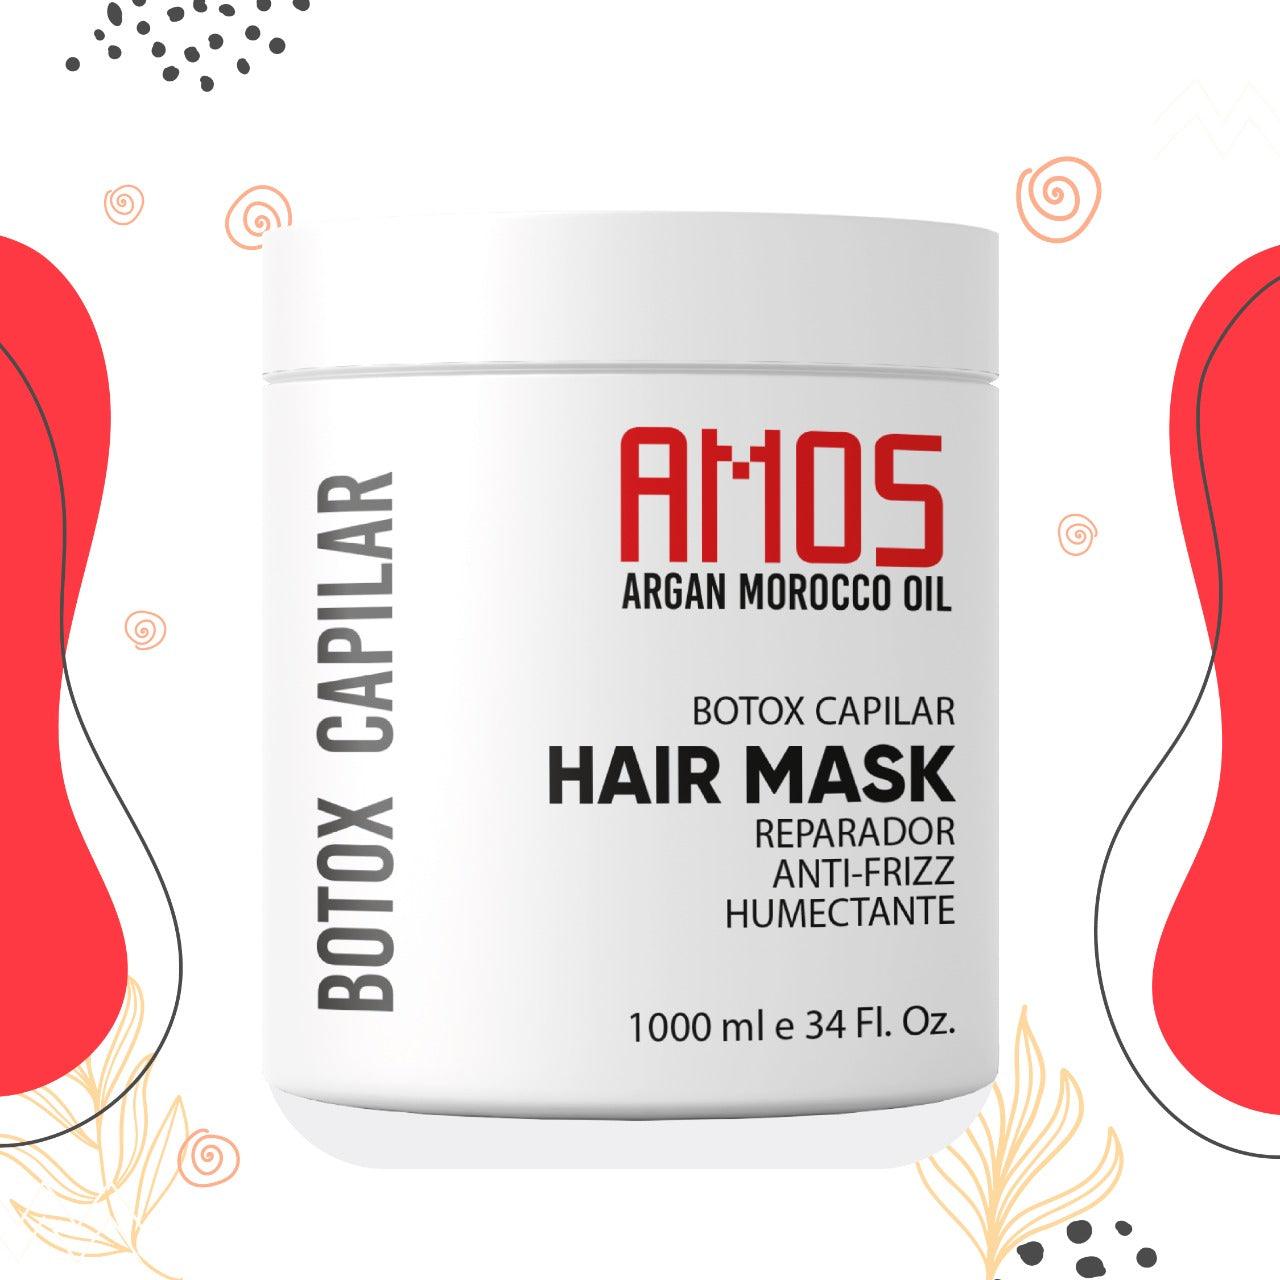 Hair Botox Mask Treatment 250 ml, ( 8.45 fl oz) - AMOSTIMELINE